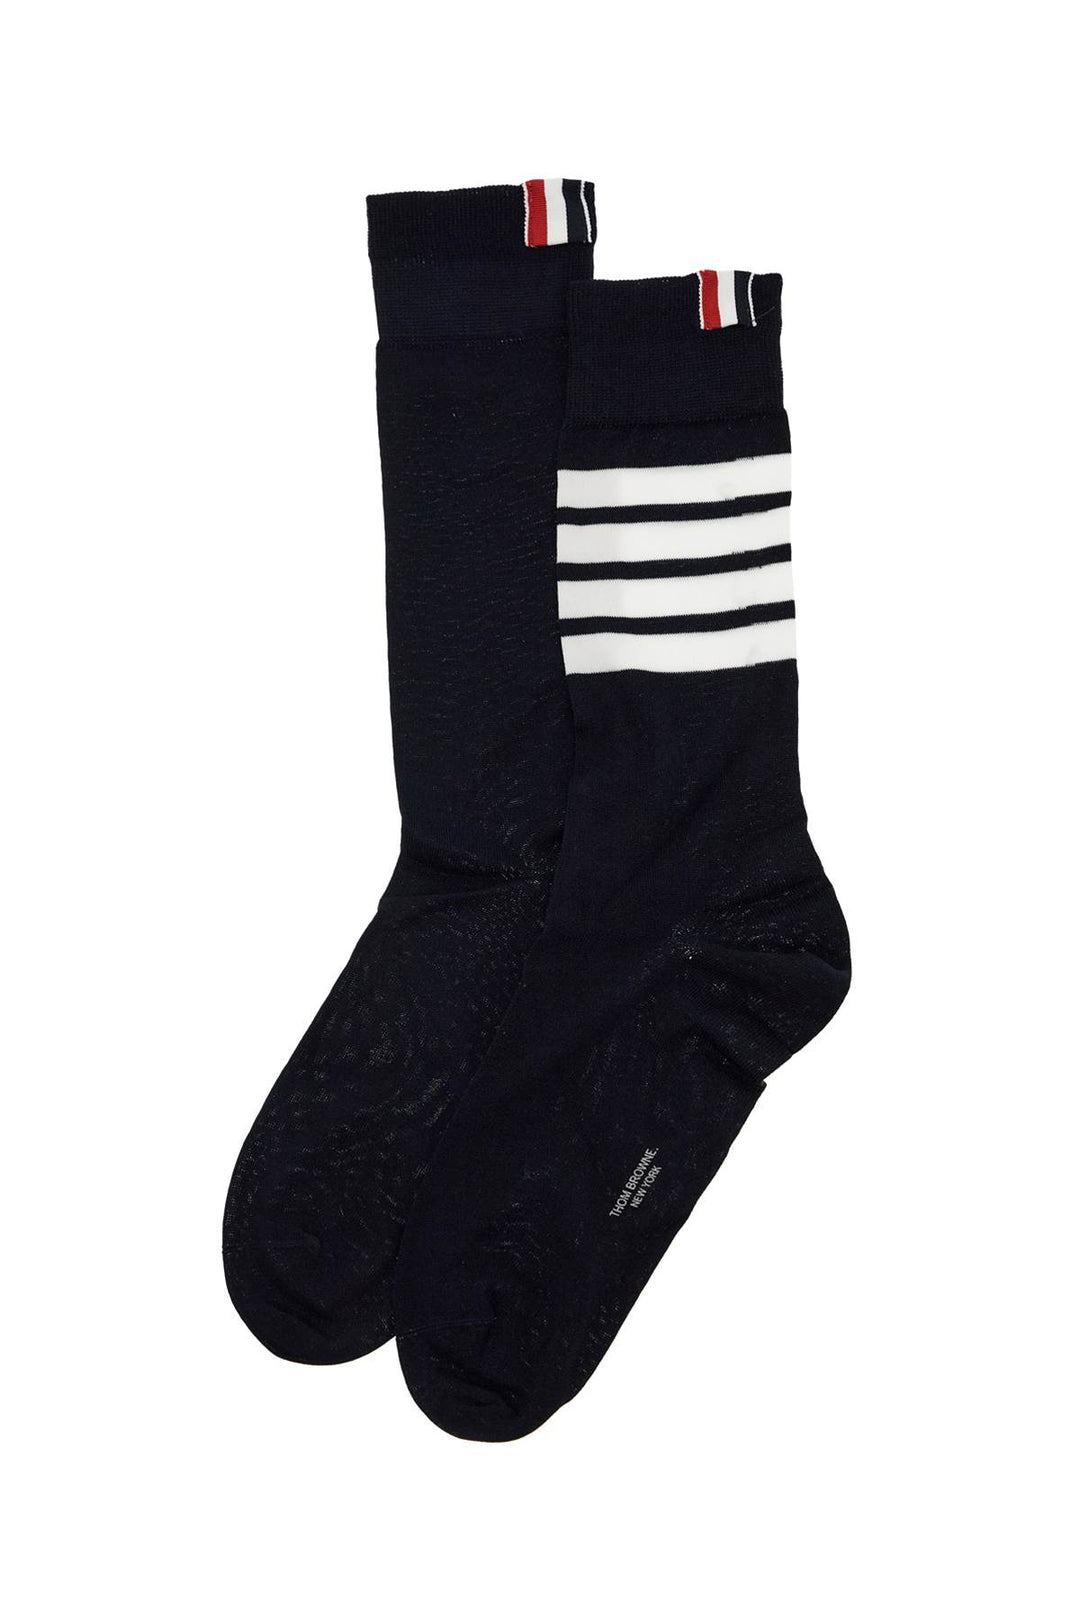 long 4-bar lightweight cotton socks-0